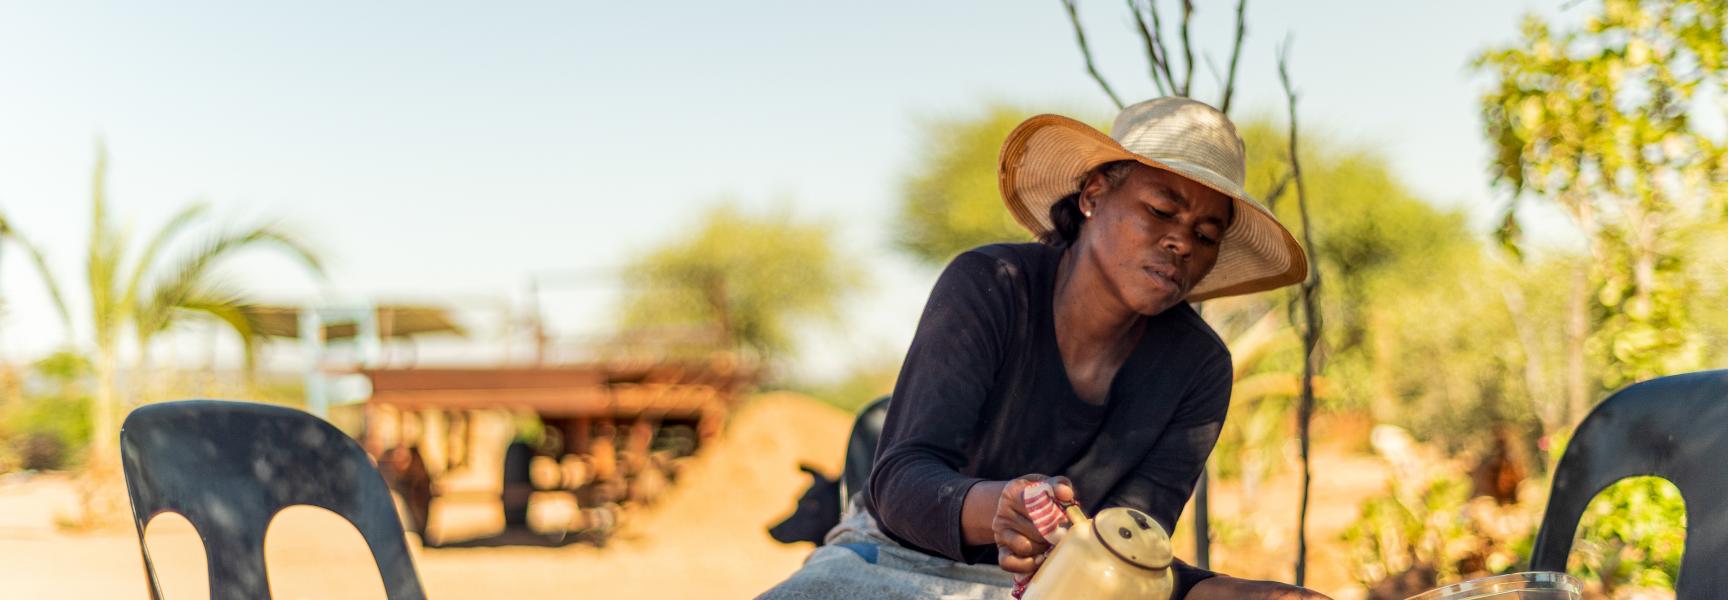 A woman serving tea in Botswana